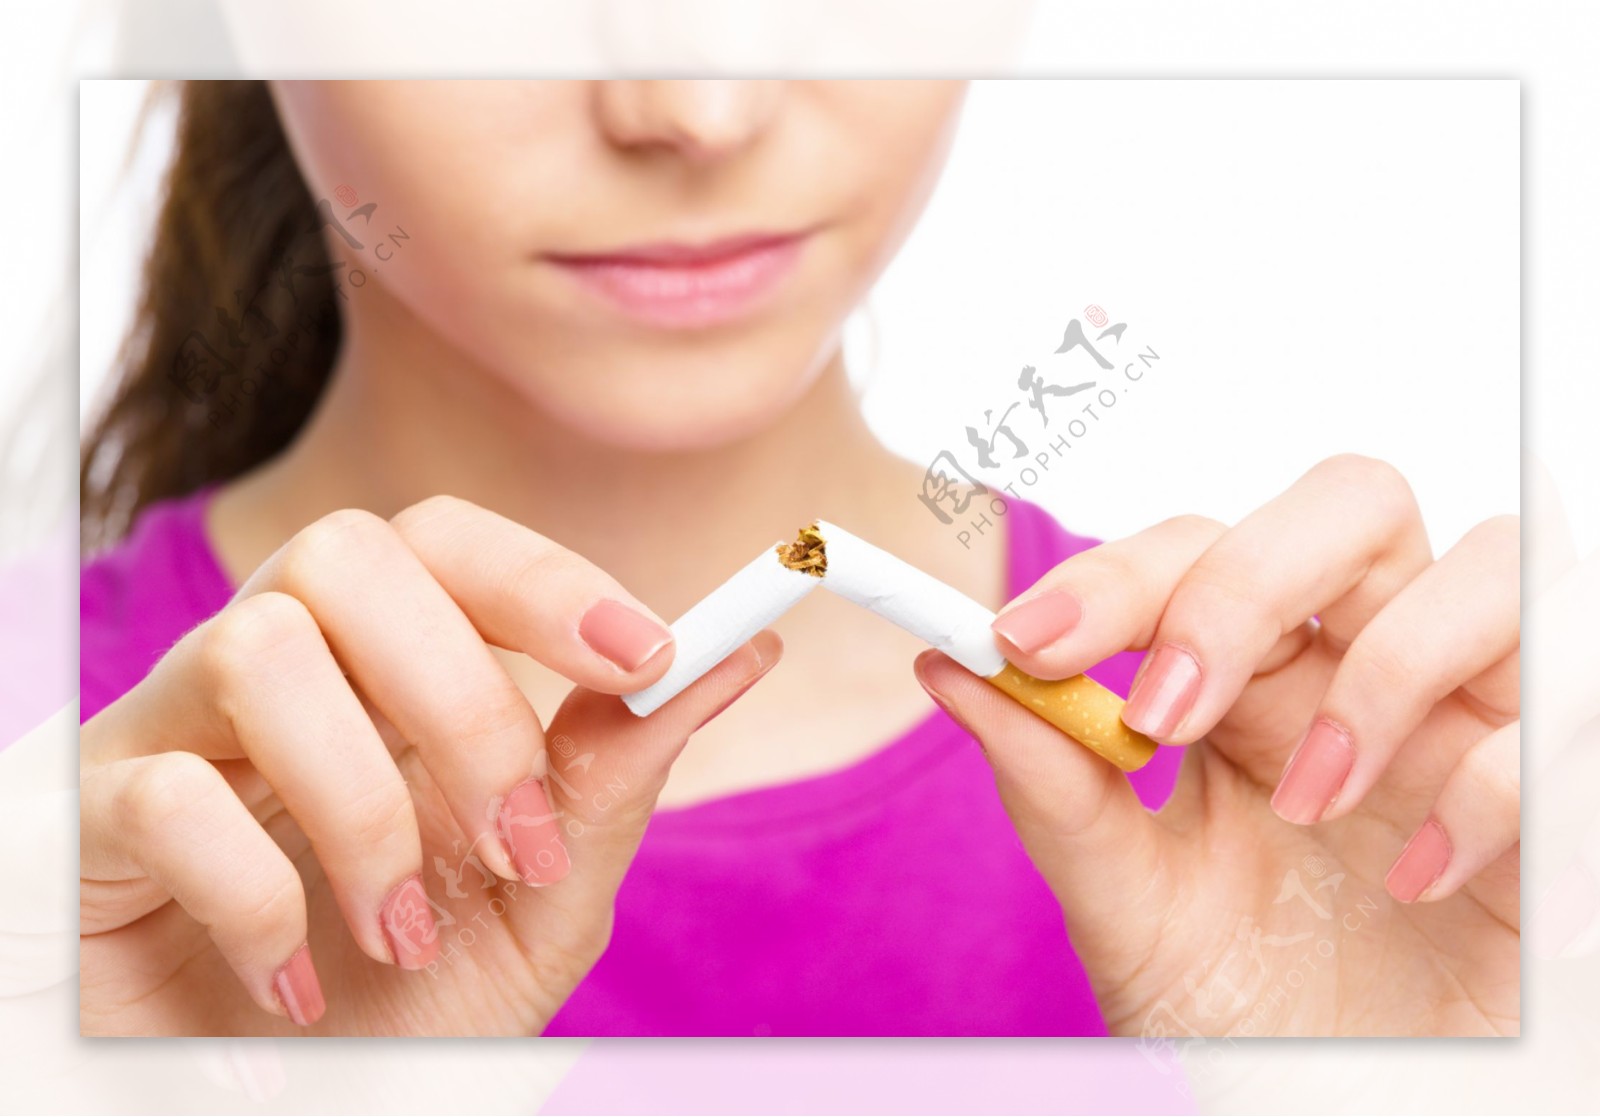 戒烟吸烟有害健康图片